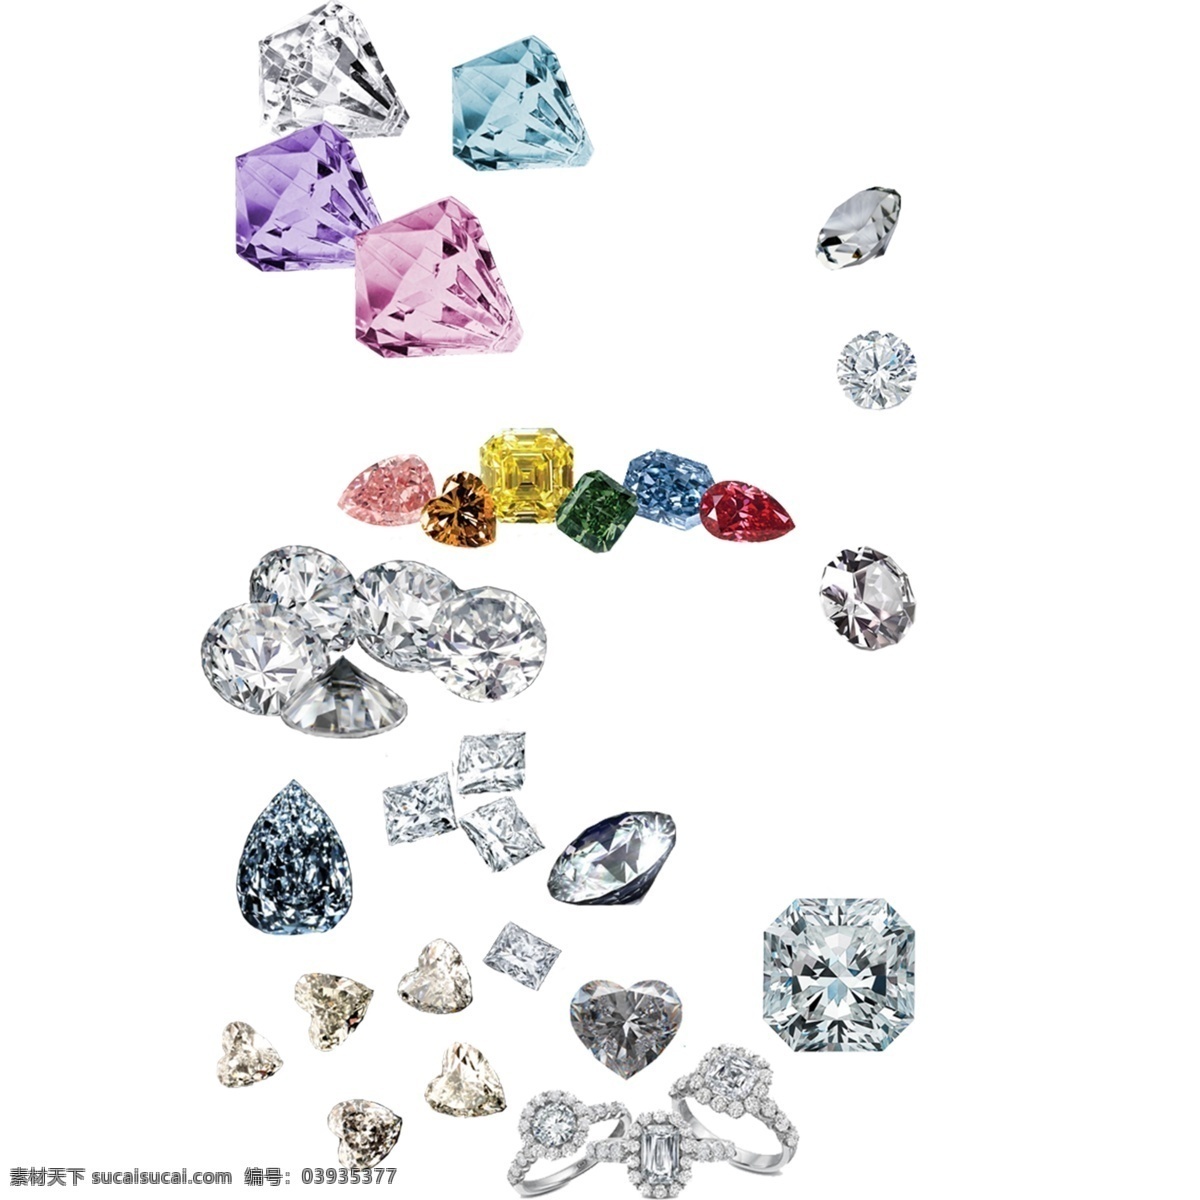 钻石素材 钻石 钻石图片 钻石图片大全 蓝钻 粉钻 黄钻 钻石图片素材 分层